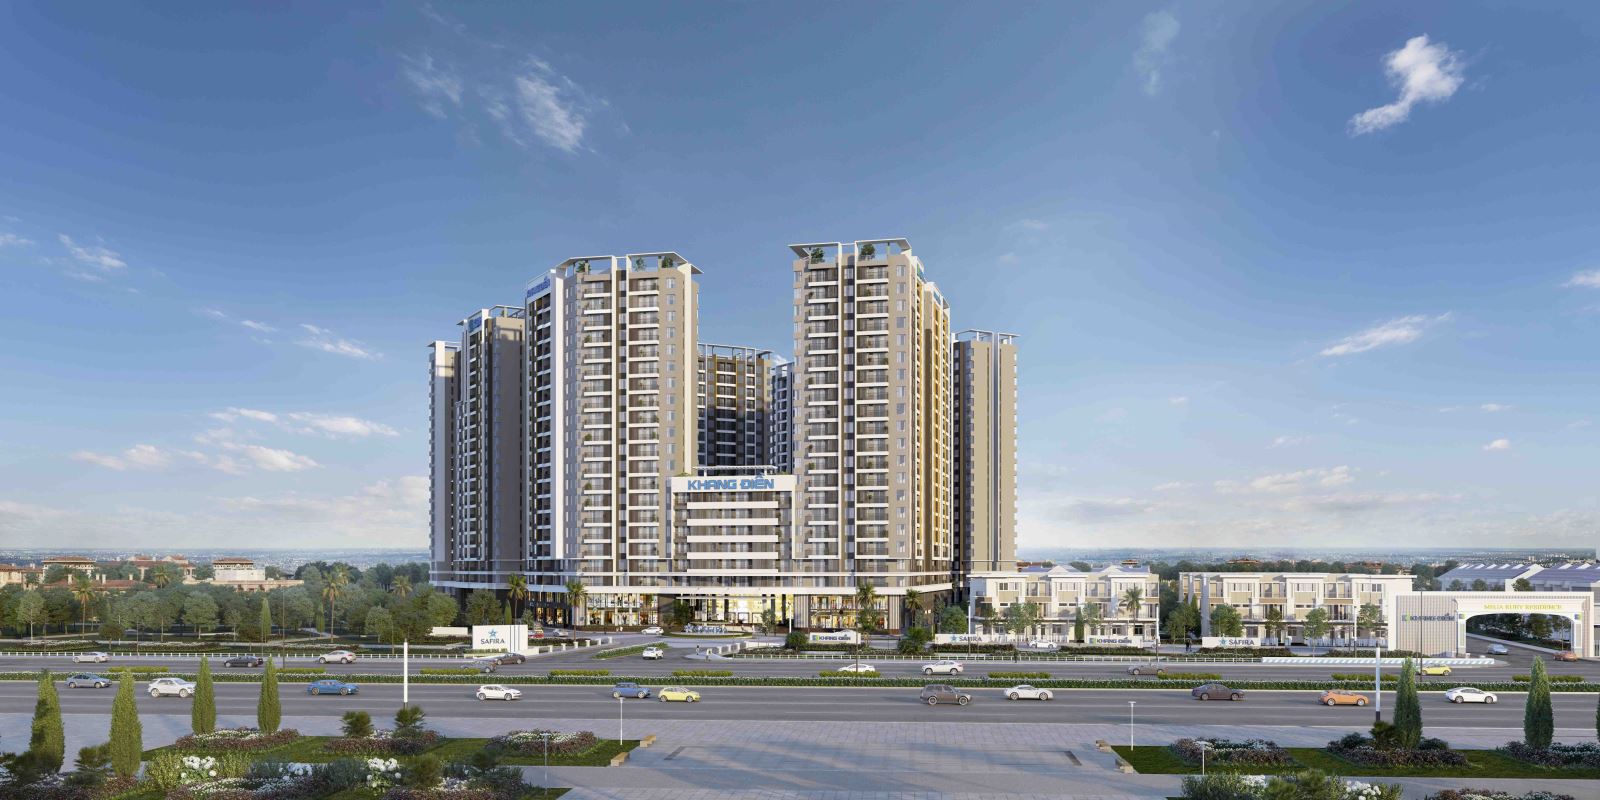 Dự án căn hộ Safira của Khang Điền – Nhân tố mới của khu đông bừng sáng